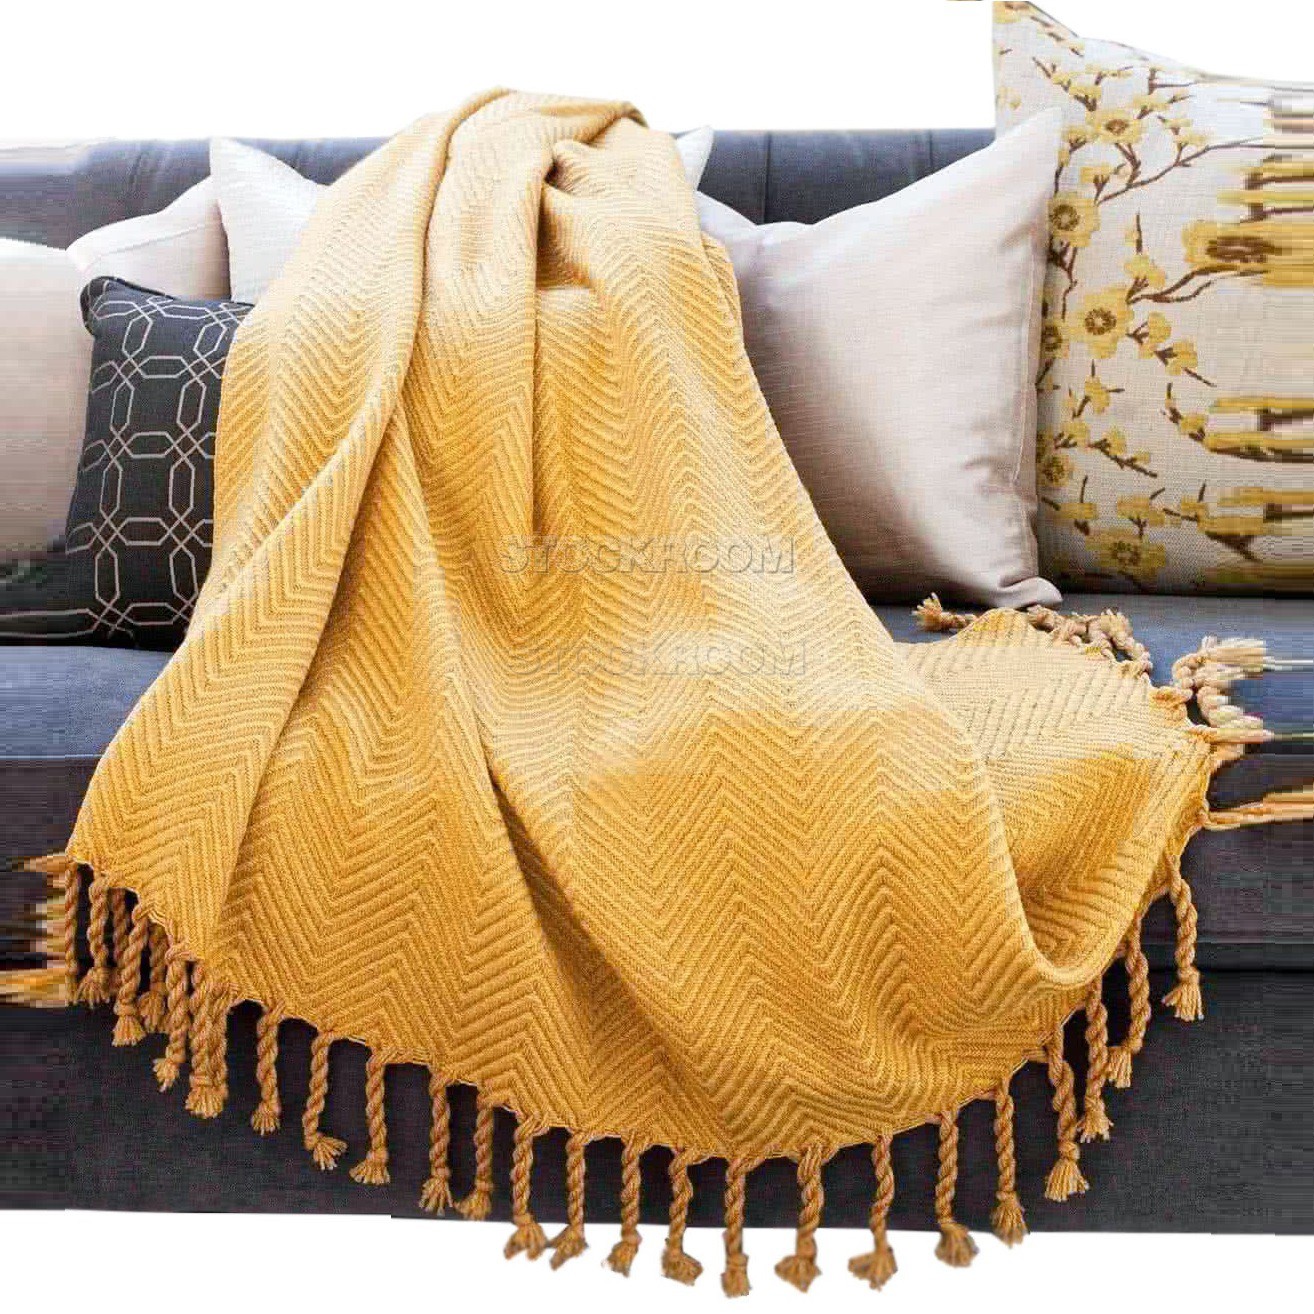 Myrcella Stylish Throw / Sofa Blanket